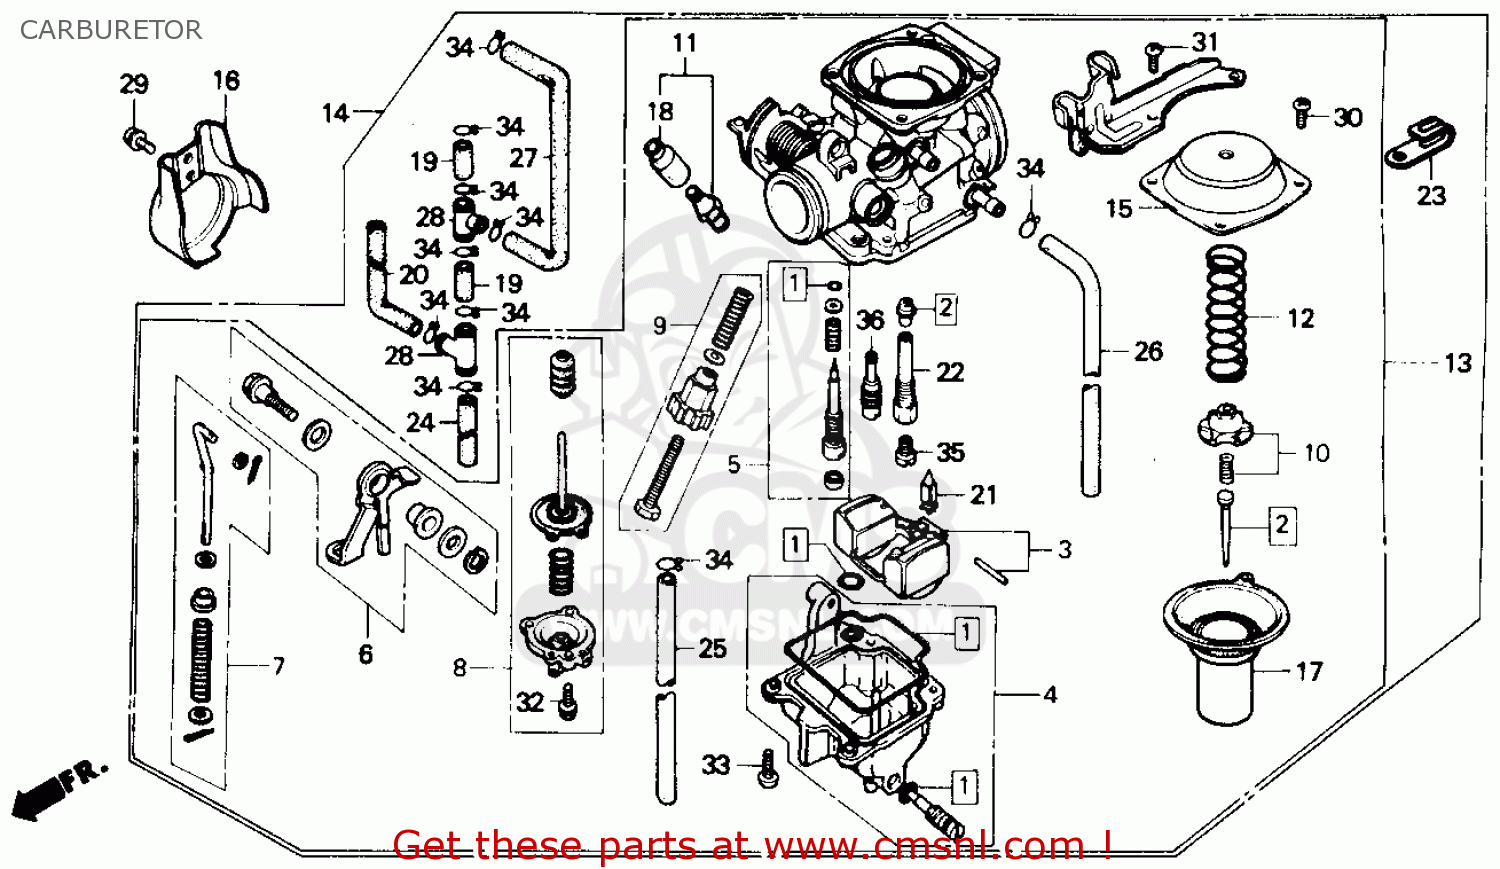 1985 Honda rebel carburetor for sale #3